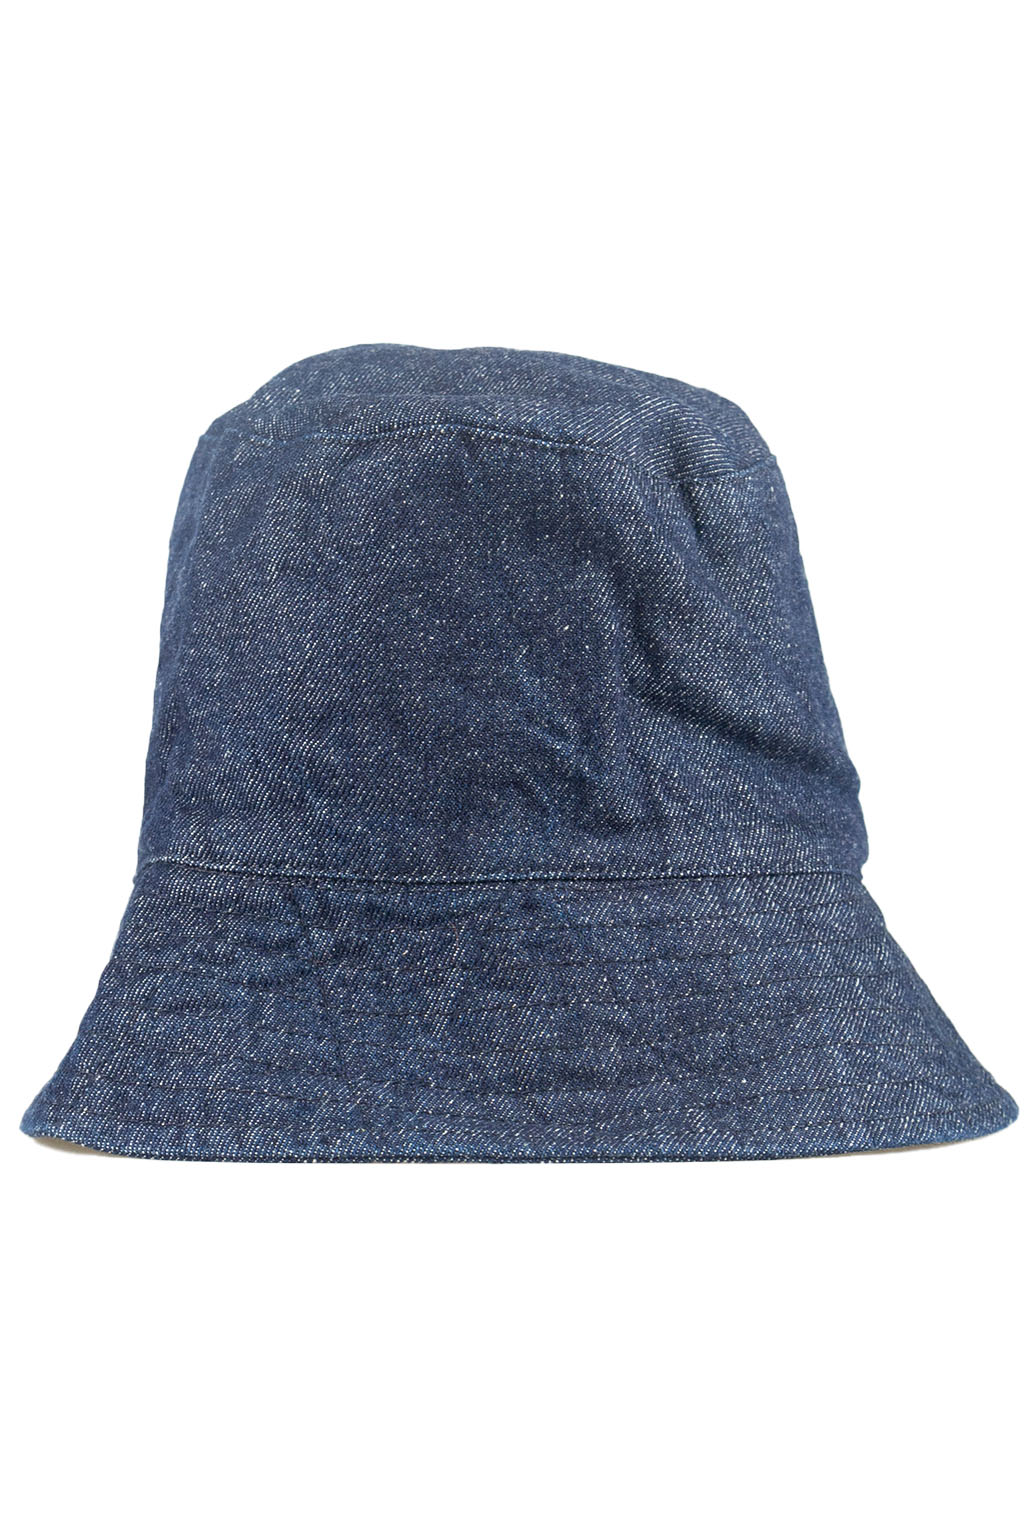 Engineered Garments Bucket Hat - Indigo 12oz Denim